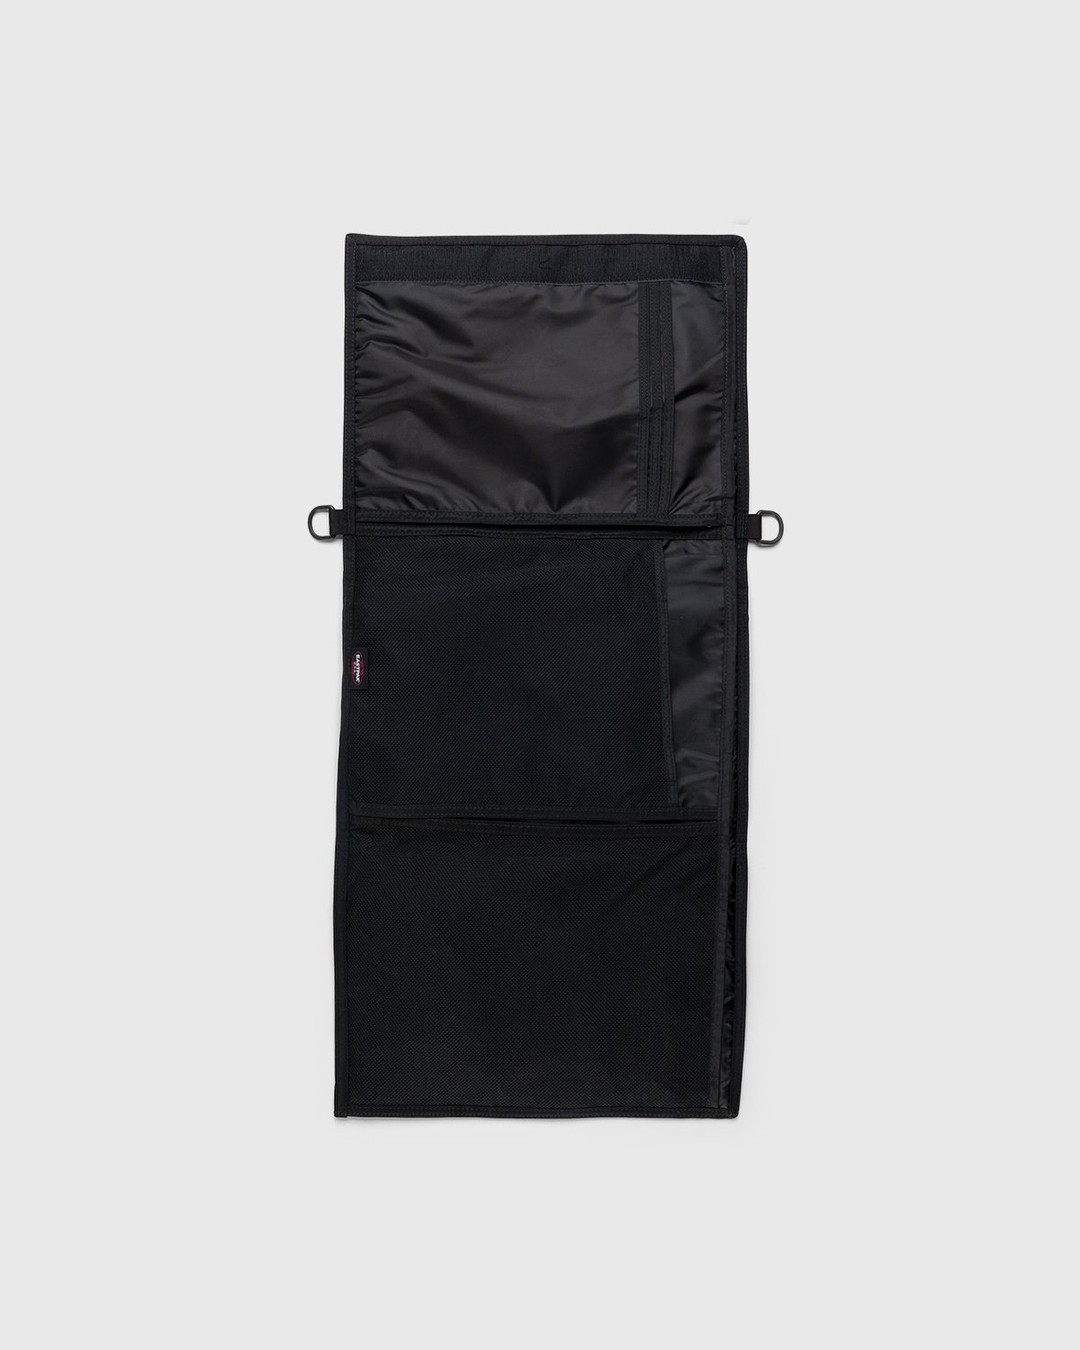 MM6 Maison Margiela x Eastpak – Borsa Tracolla Shoulder Bag Black - Pouches - Black - Image 3